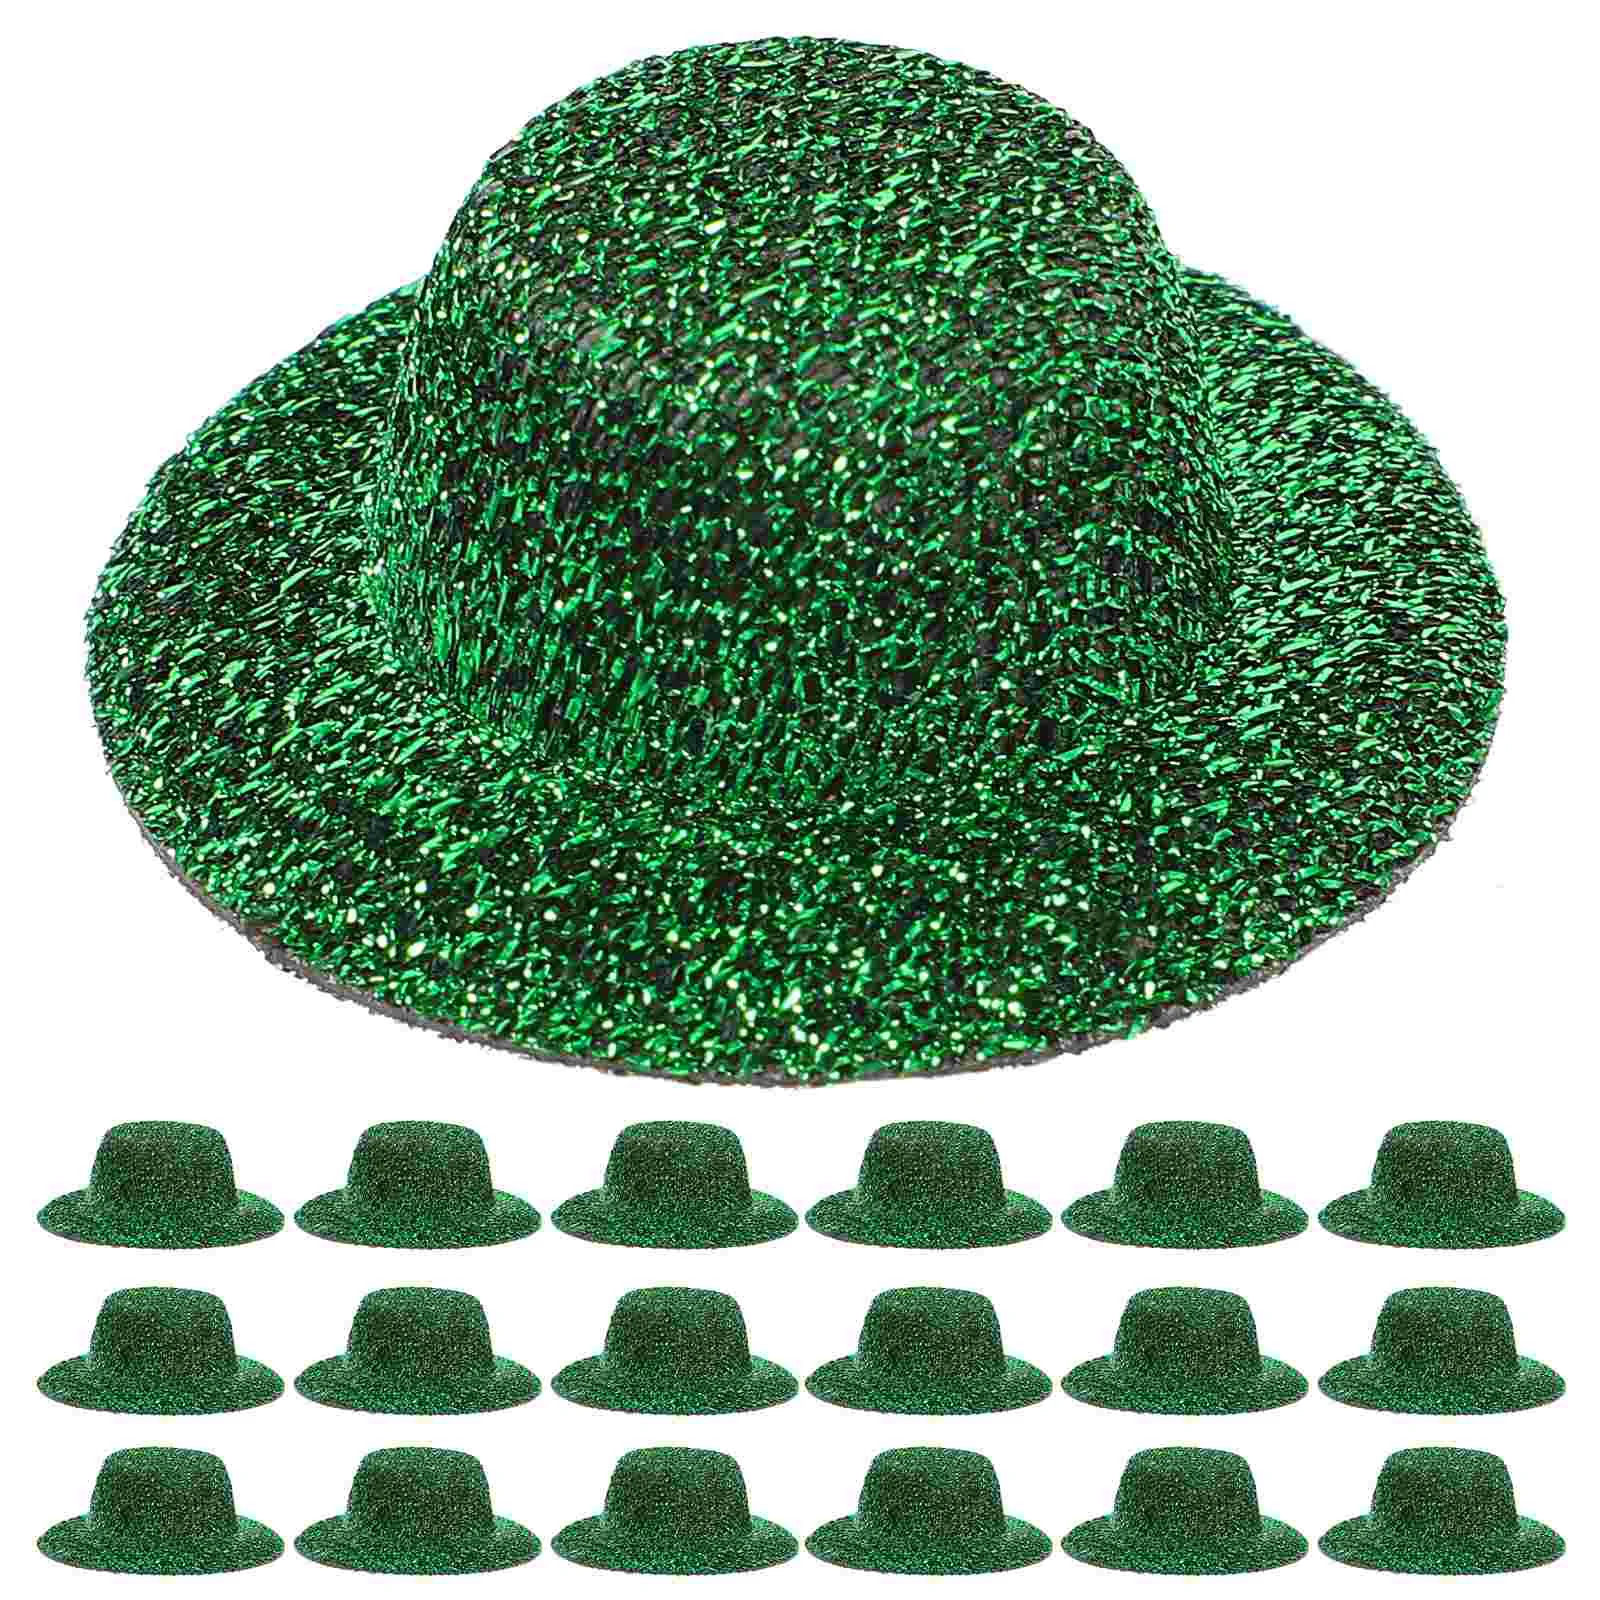 

20 шт. Изящные миниатюрные джазовые шляпы, декоративная мини-шляпа, модель детальной маленькой шляпы, ремесла